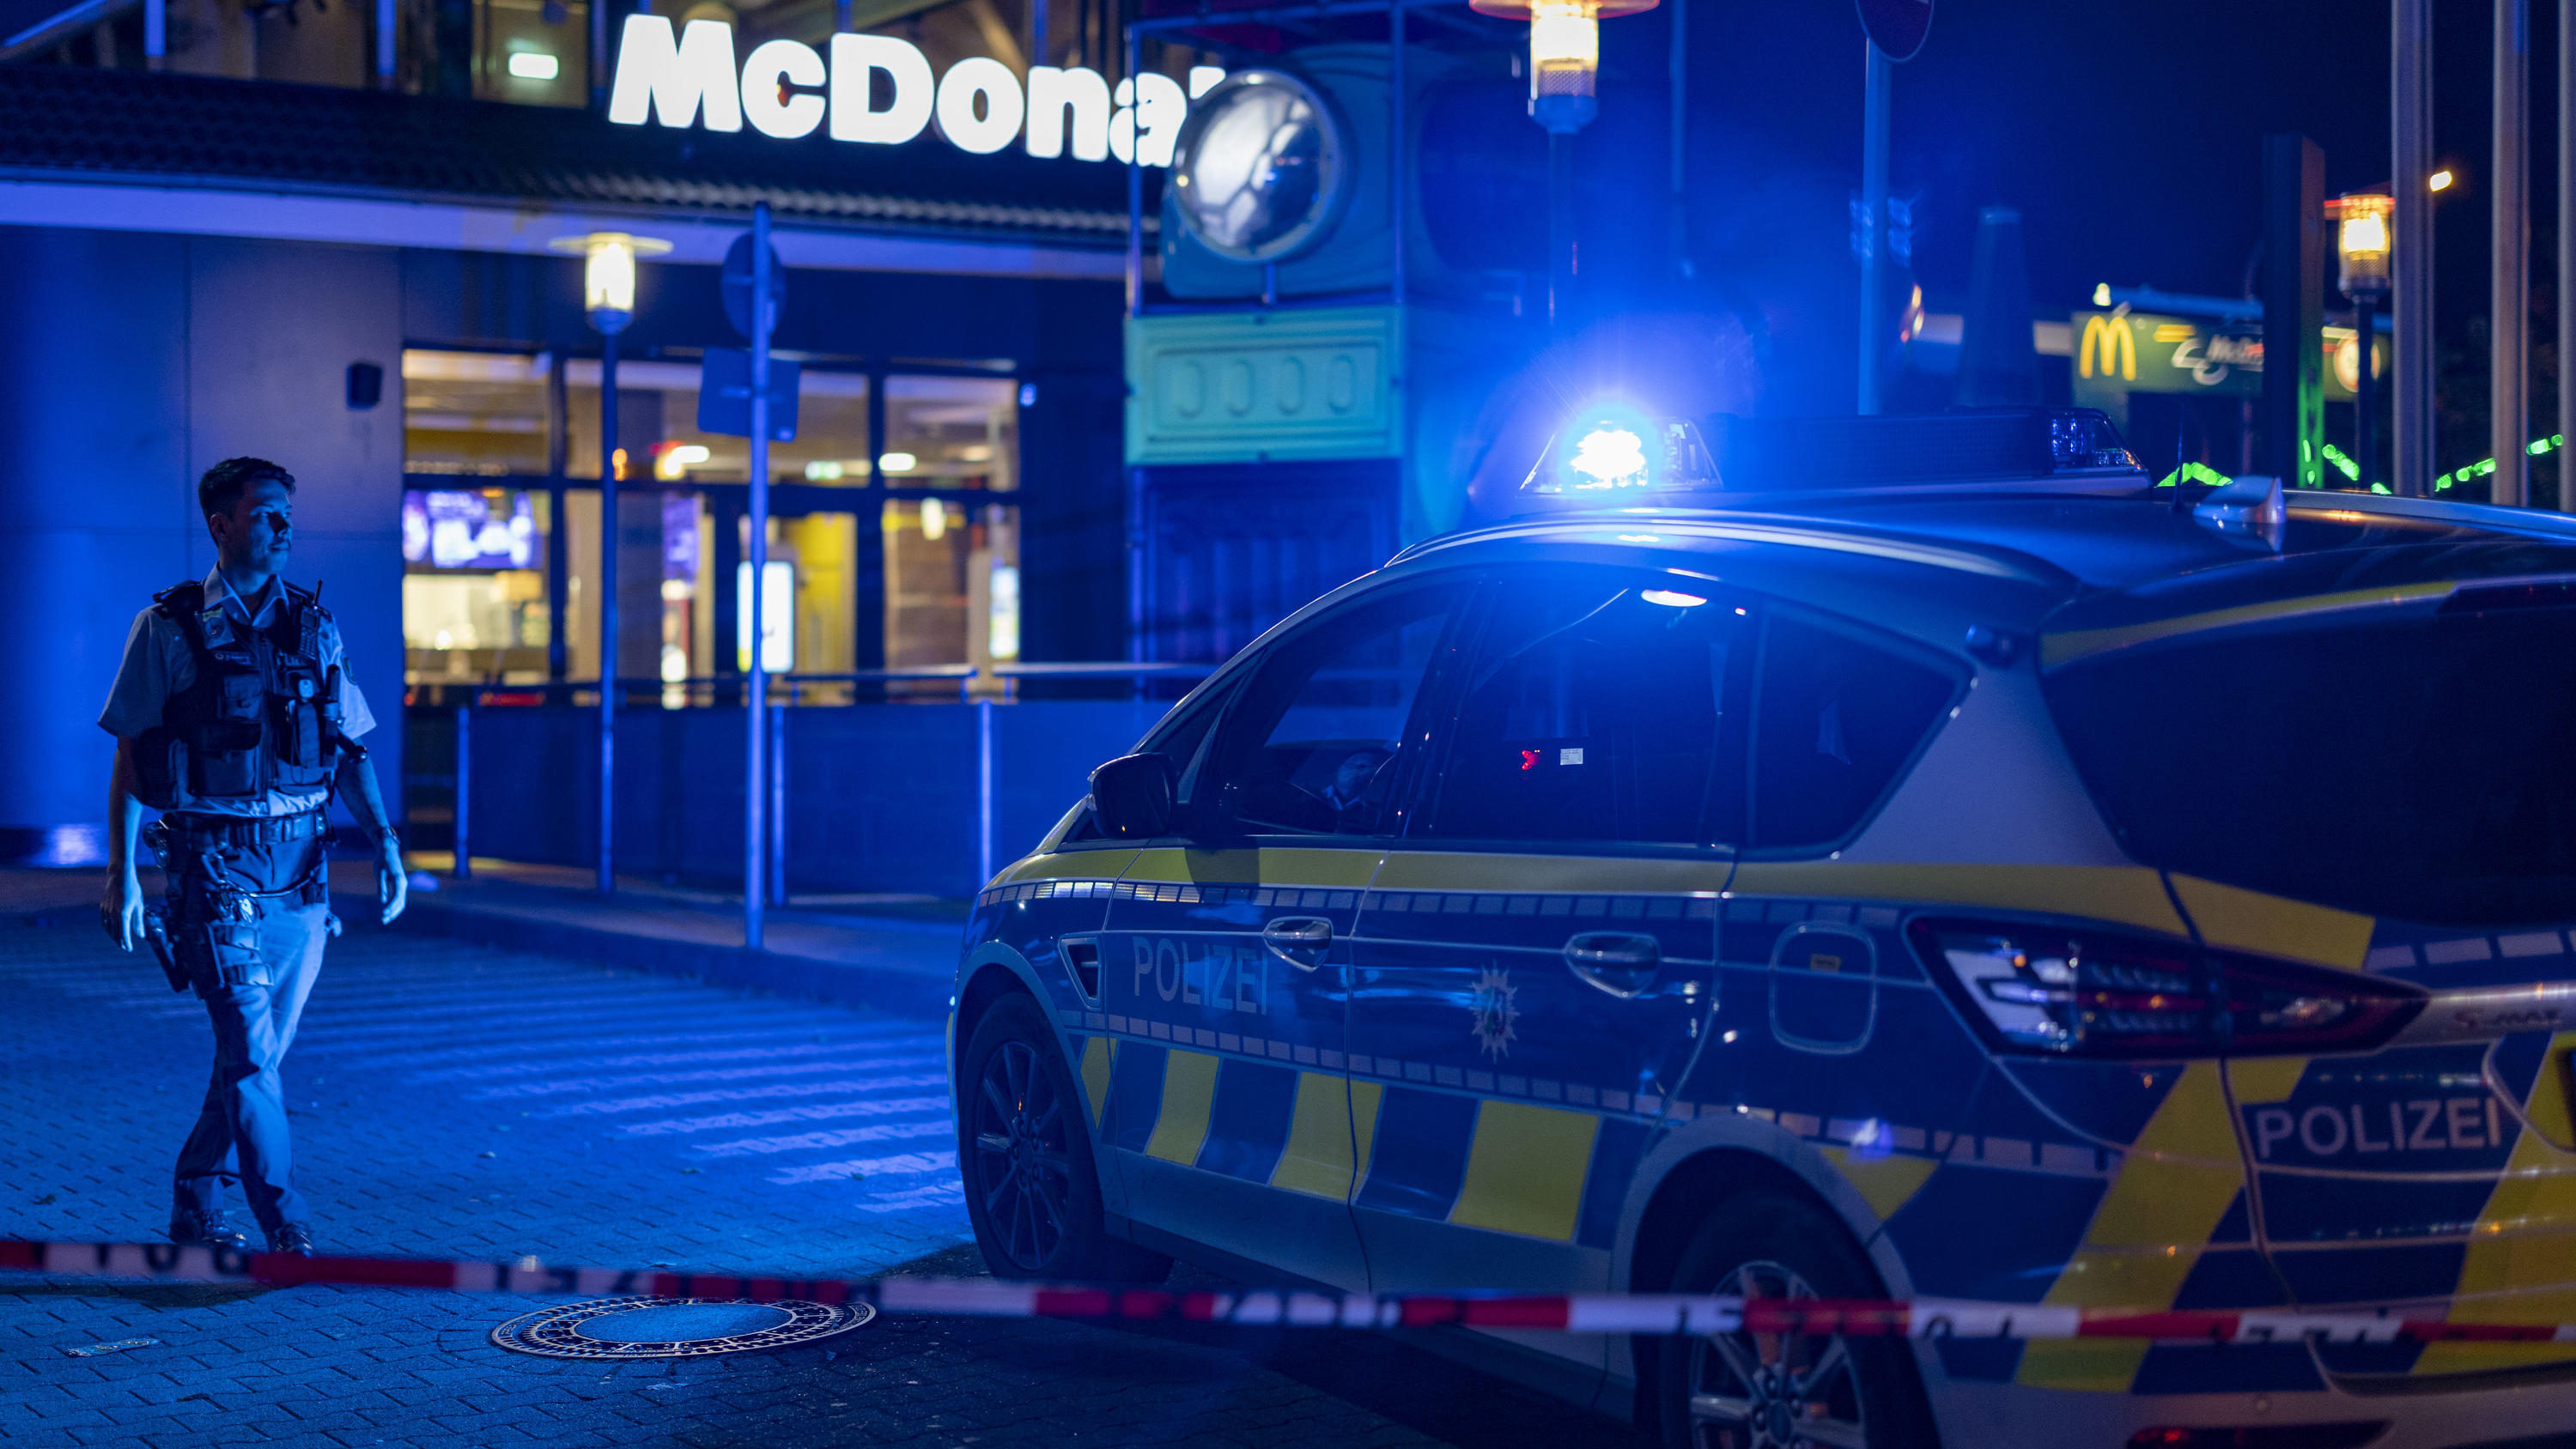 29.10.2022, Nordrhein-Westfalen, Oberhausen: Ein Polizist geht vor einem Fast-Food-Restaurant im Blaulicht, nachdem im Außenbereich Schüsse gefallen waren. Drei Menschen wurden verletzt. Der Täter sei auf der Flucht, teilte ein Polizeisprecher mit. D